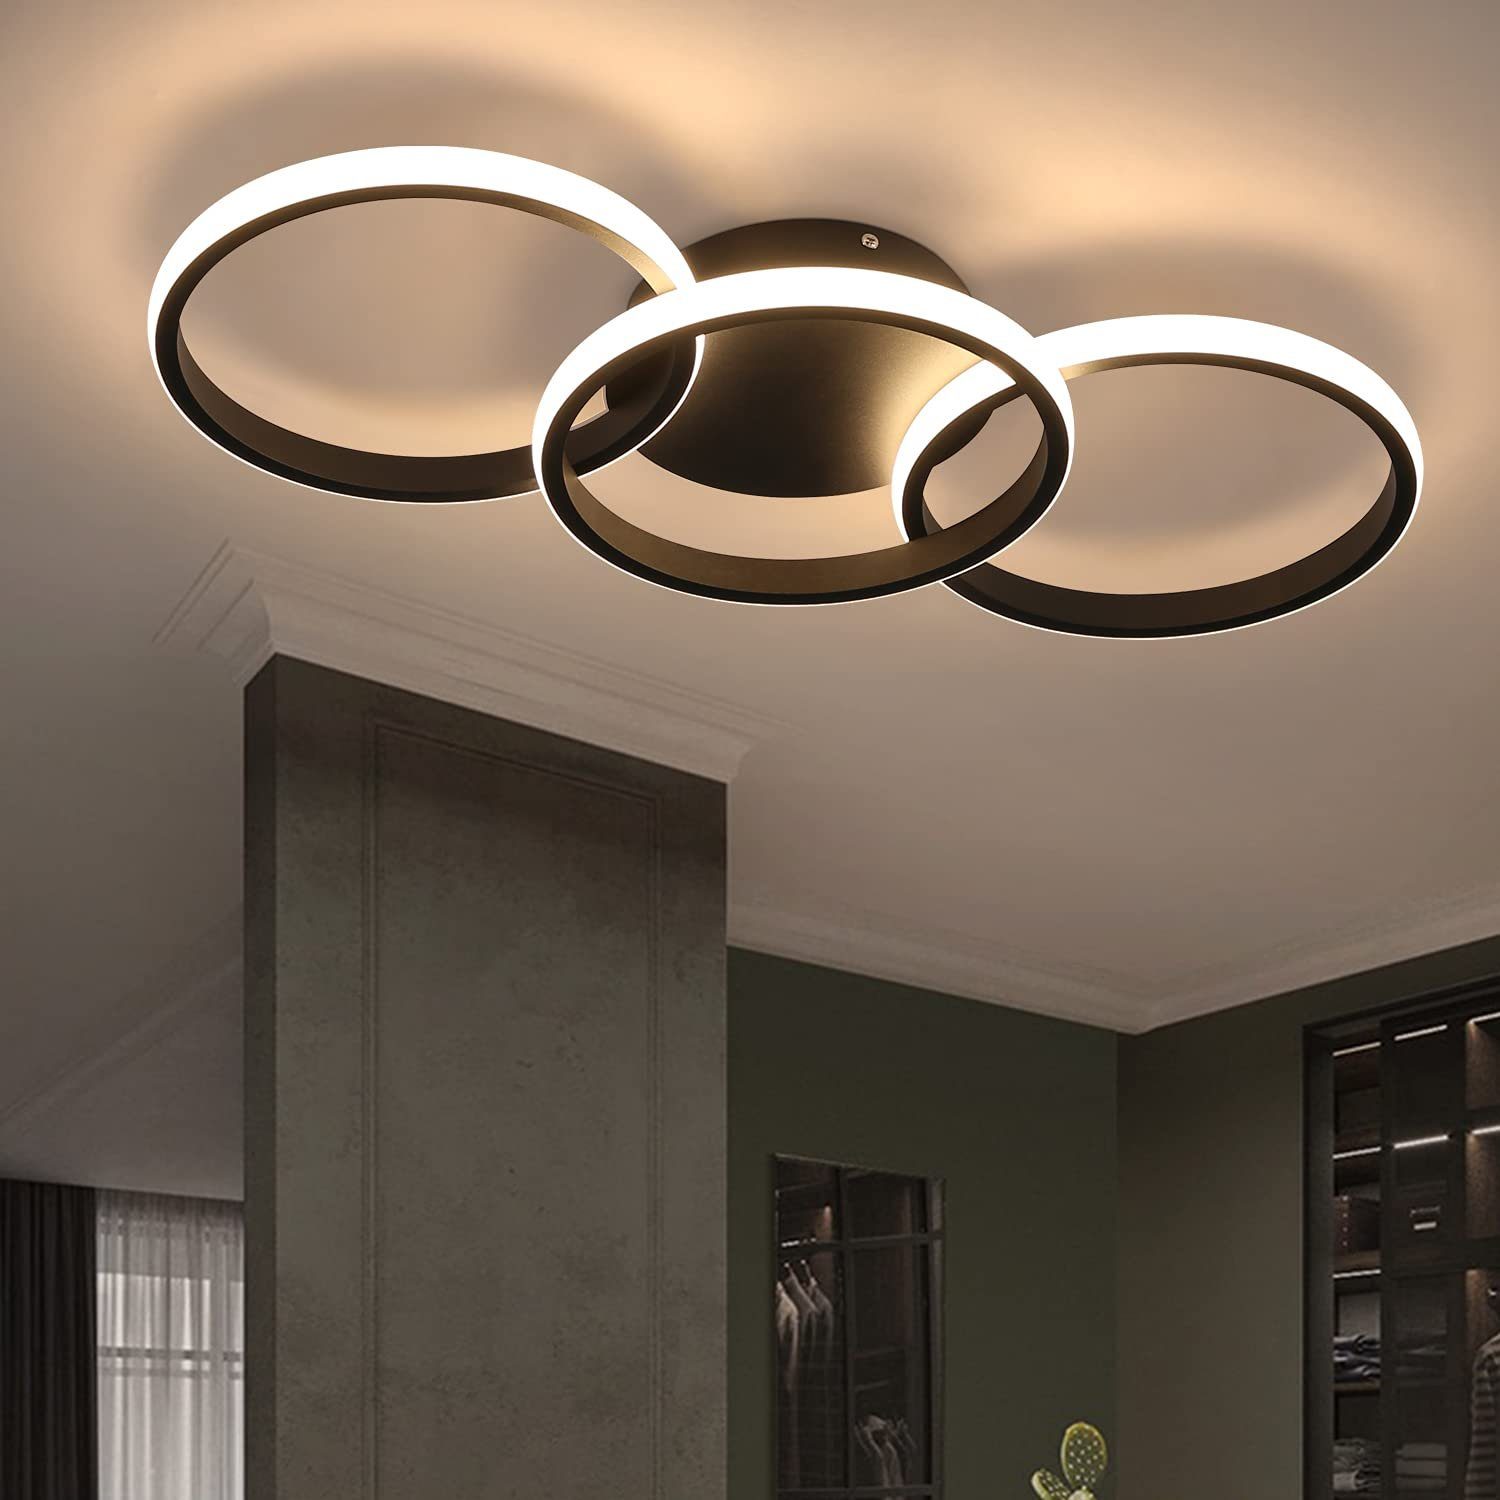 LED Design Deckenleuchte Wohnzimmer modern Deckenlampe Hängeleuchte Beleuchtung 